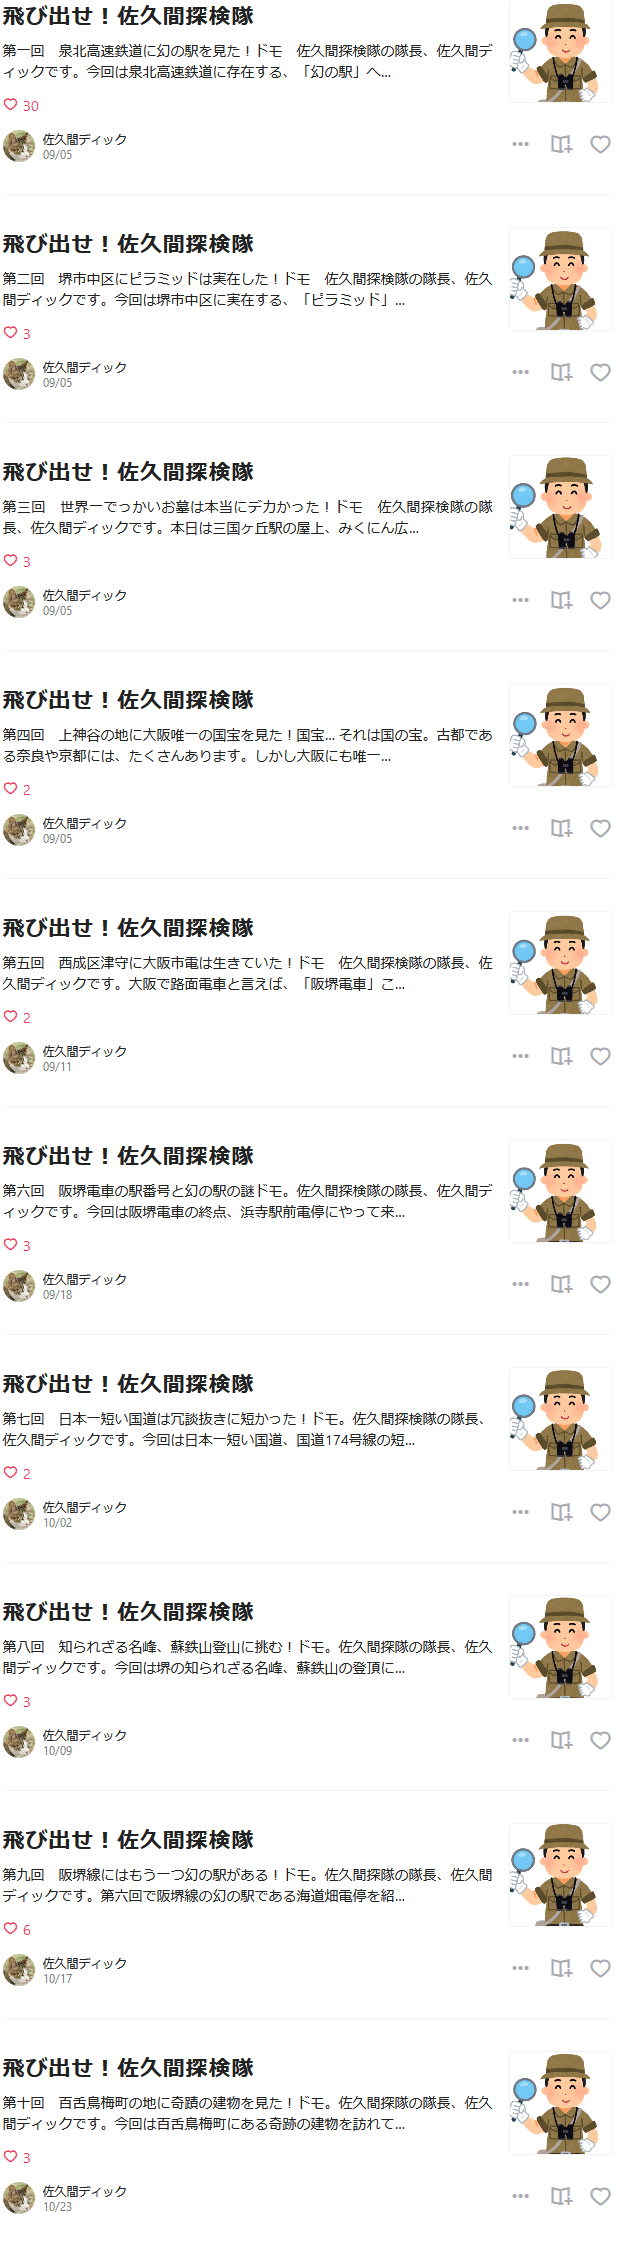 Screenshot_2020-11-09_飛び出せ_佐久間探検隊_佐久間ディック_note